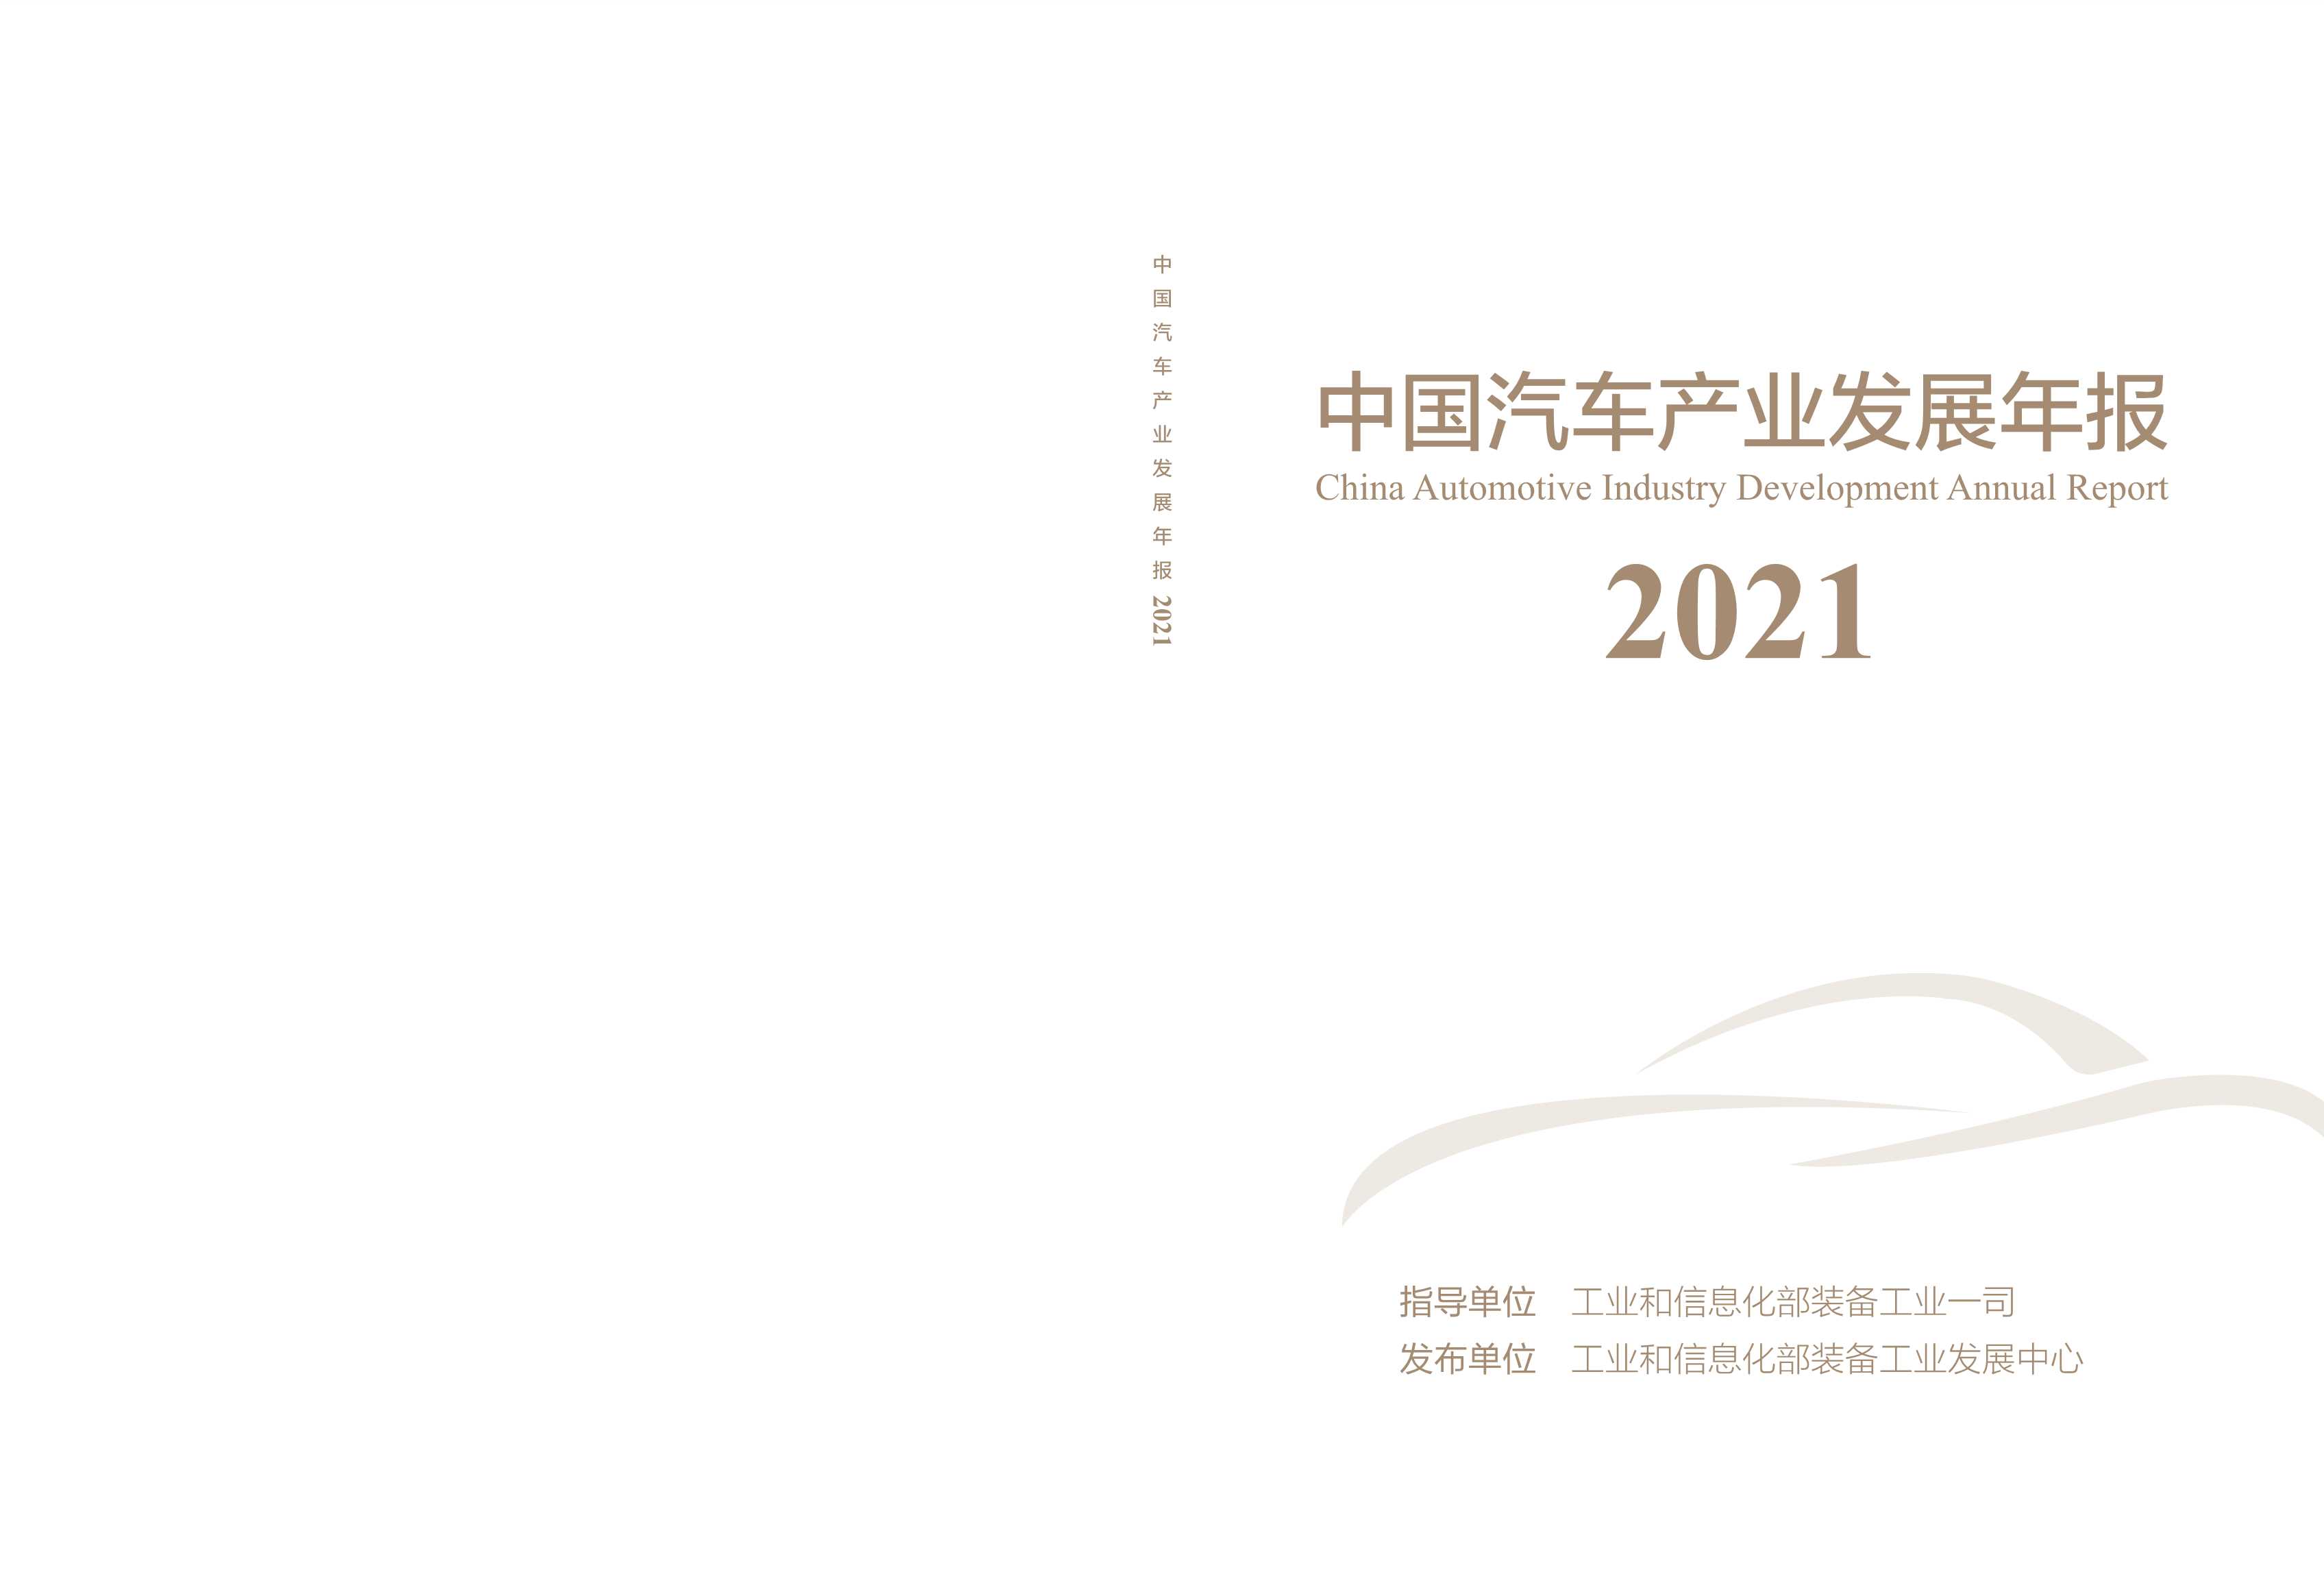 工业和信息化部装备工业发展中心-2021中国汽车产业发展年报-2021.09-82页